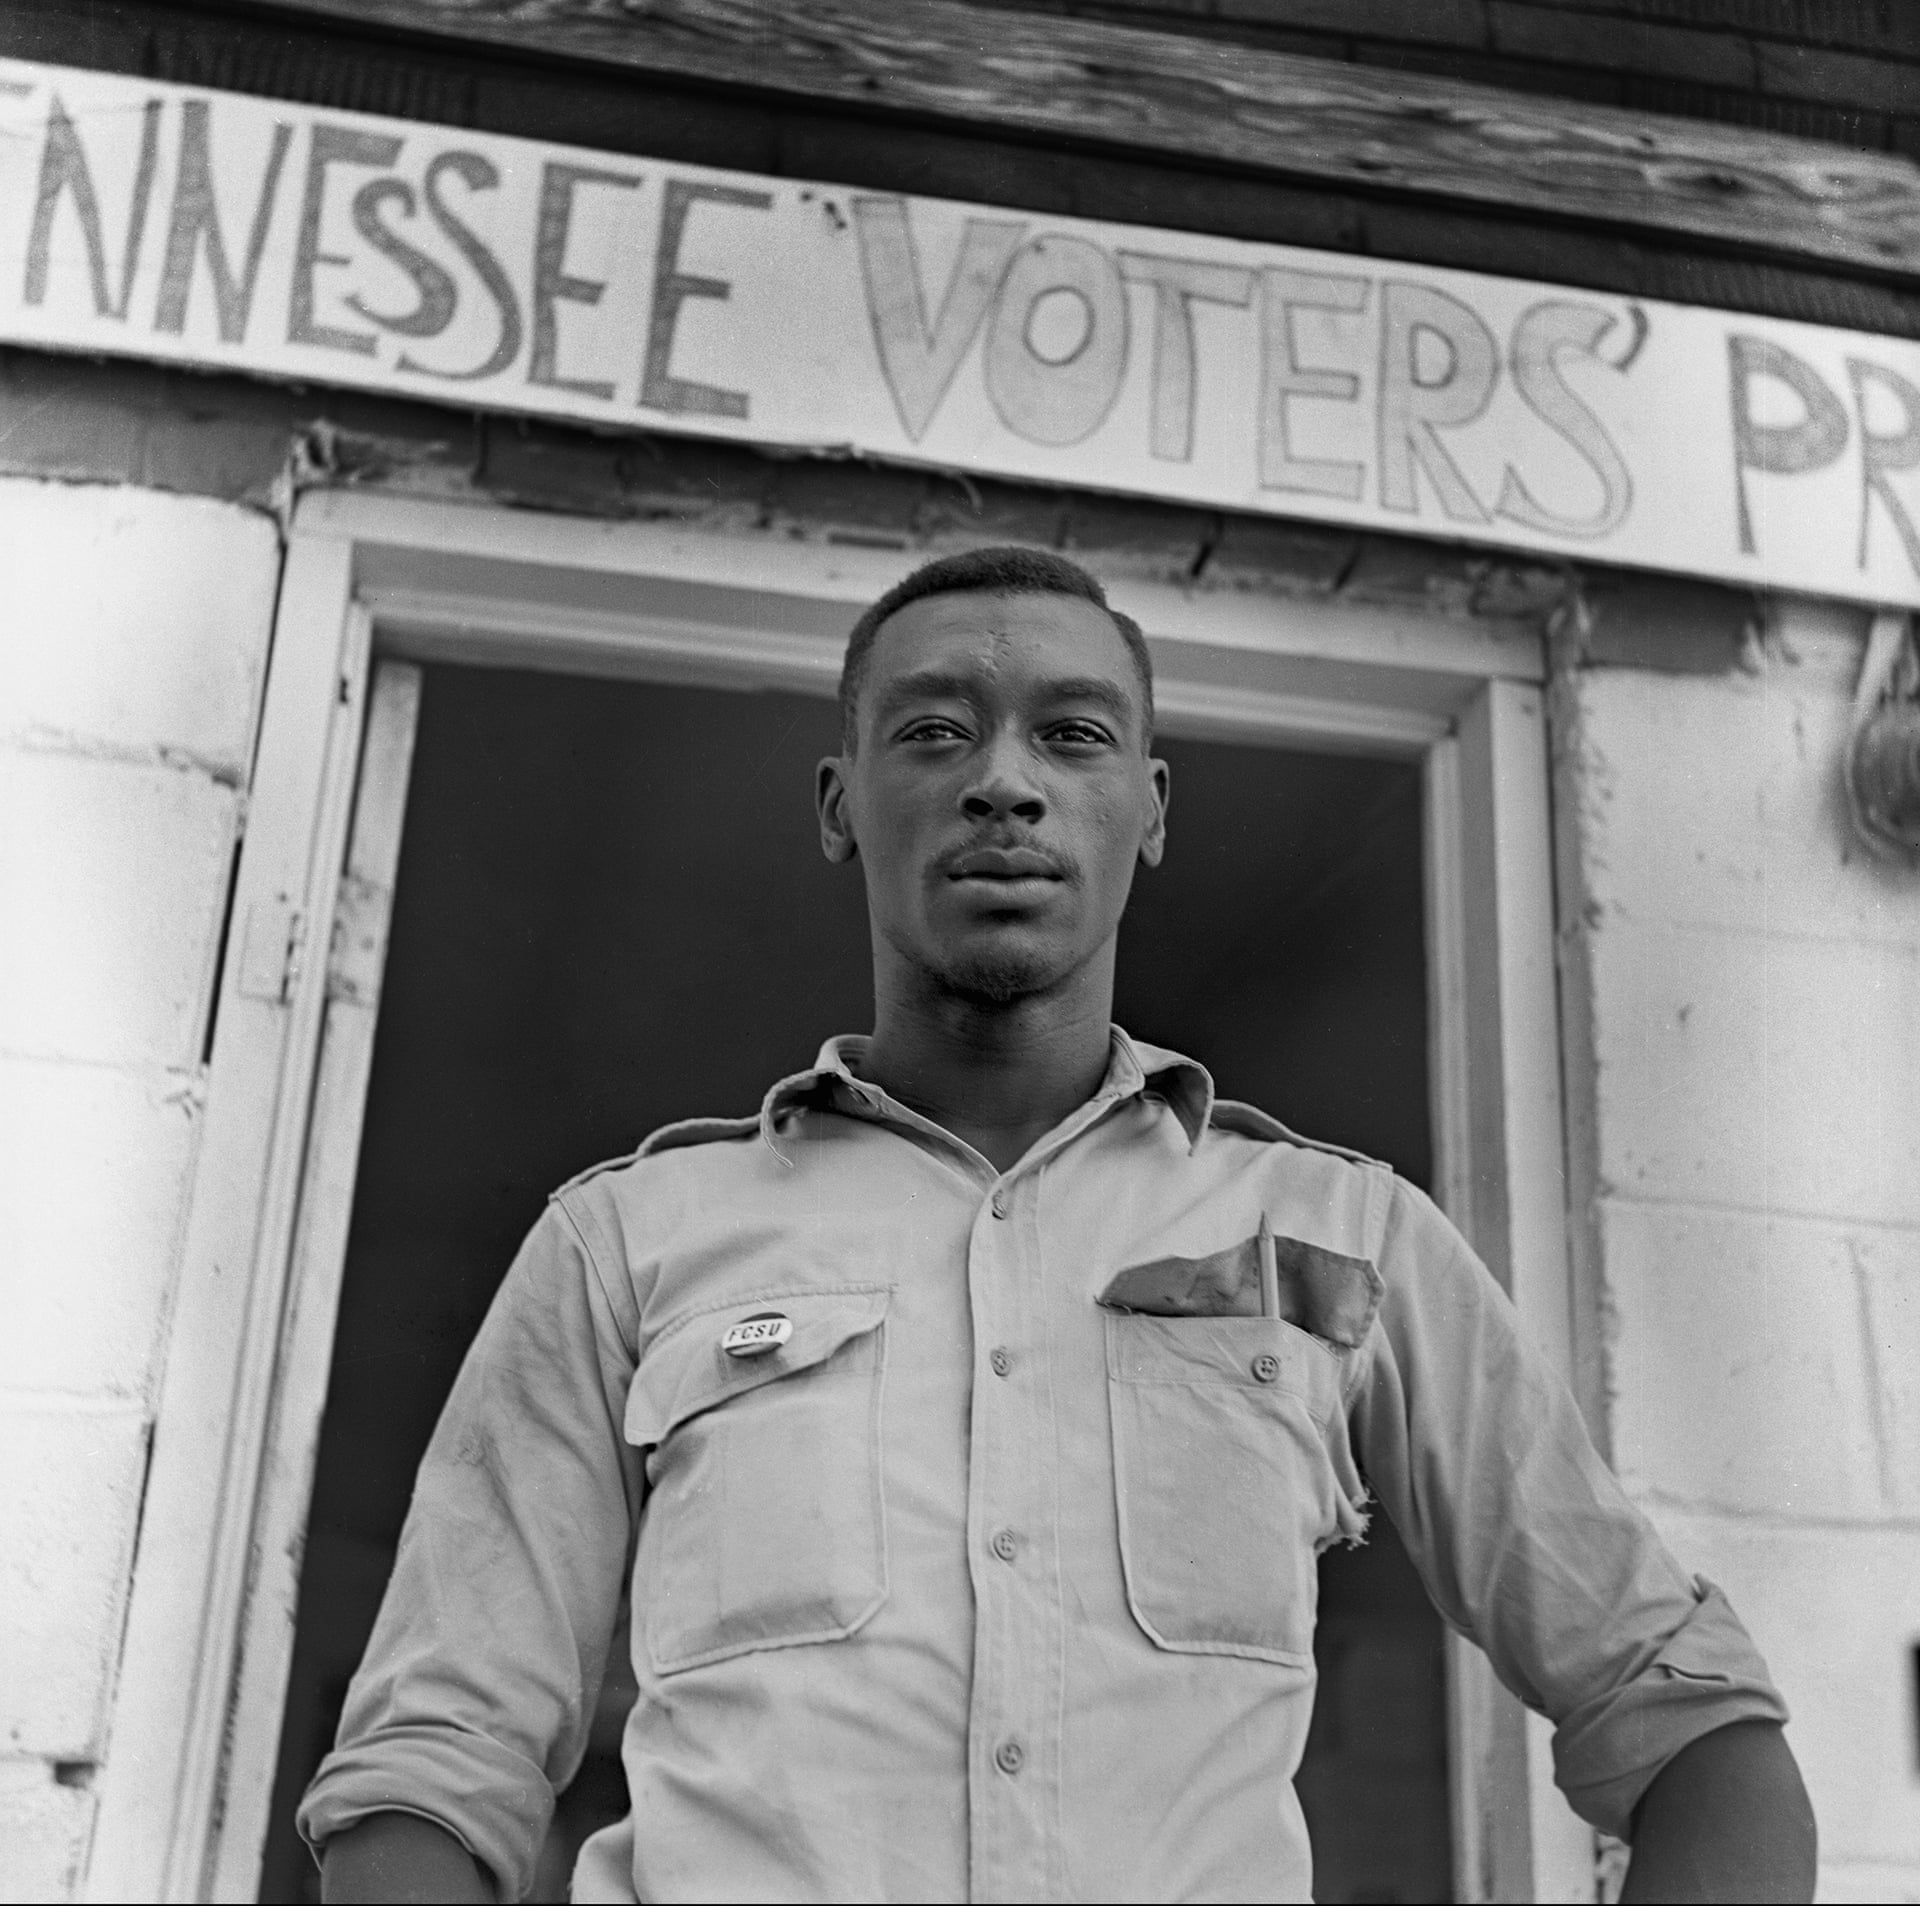 Student volunteer working to register voters, 1964-65